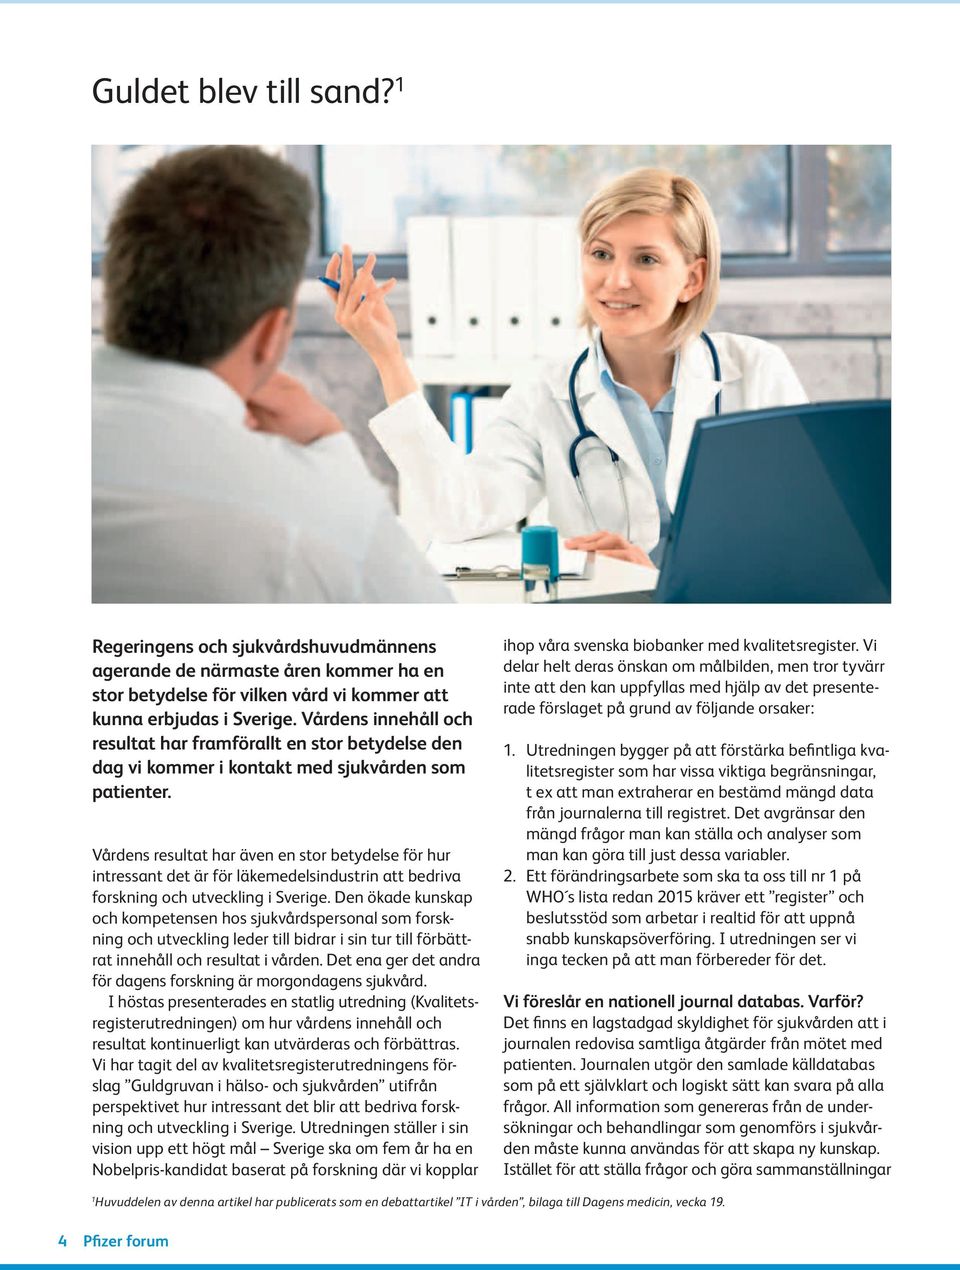 Vårdens resultat har även en stor betydelse för hur intressant det är för läkemedelsindustrin att bedriva forskning och utveckling i Sverige.